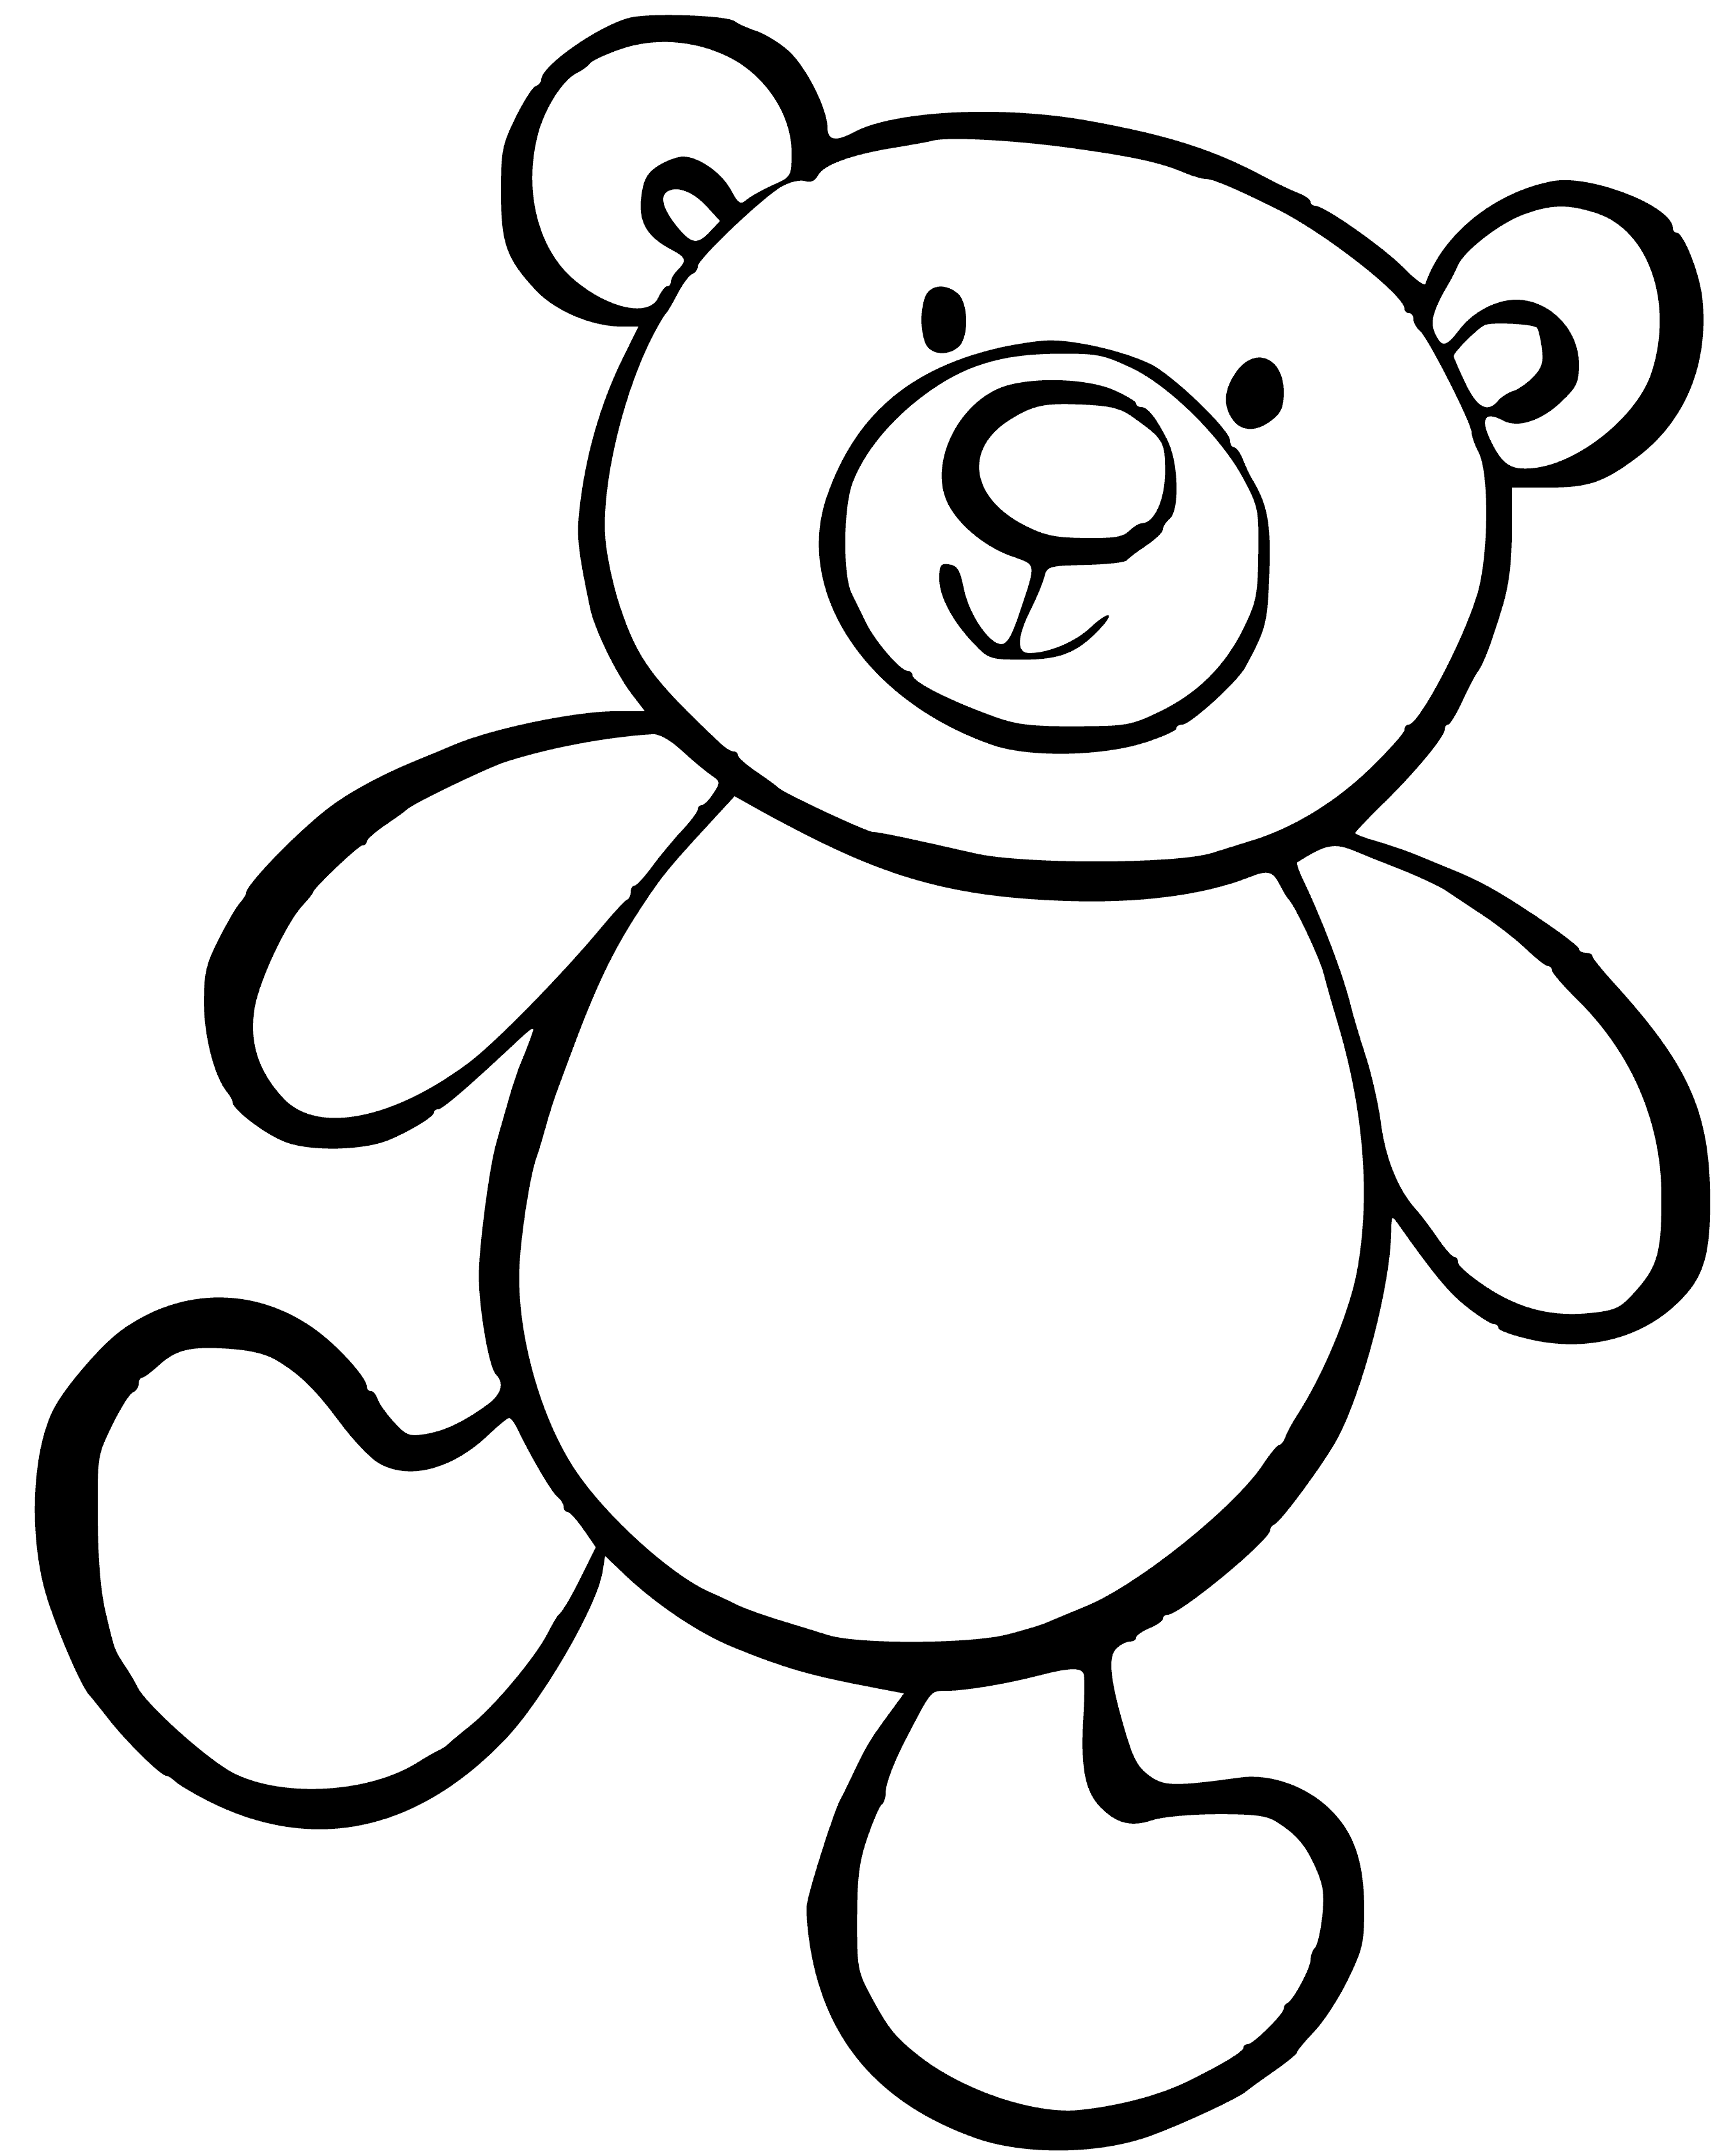 Простые рисунки для детей. Медвежонок раскраска для детей. Раскраска "мишки". Мишка раскраска для малышей. Медведь раскраска для малышей.